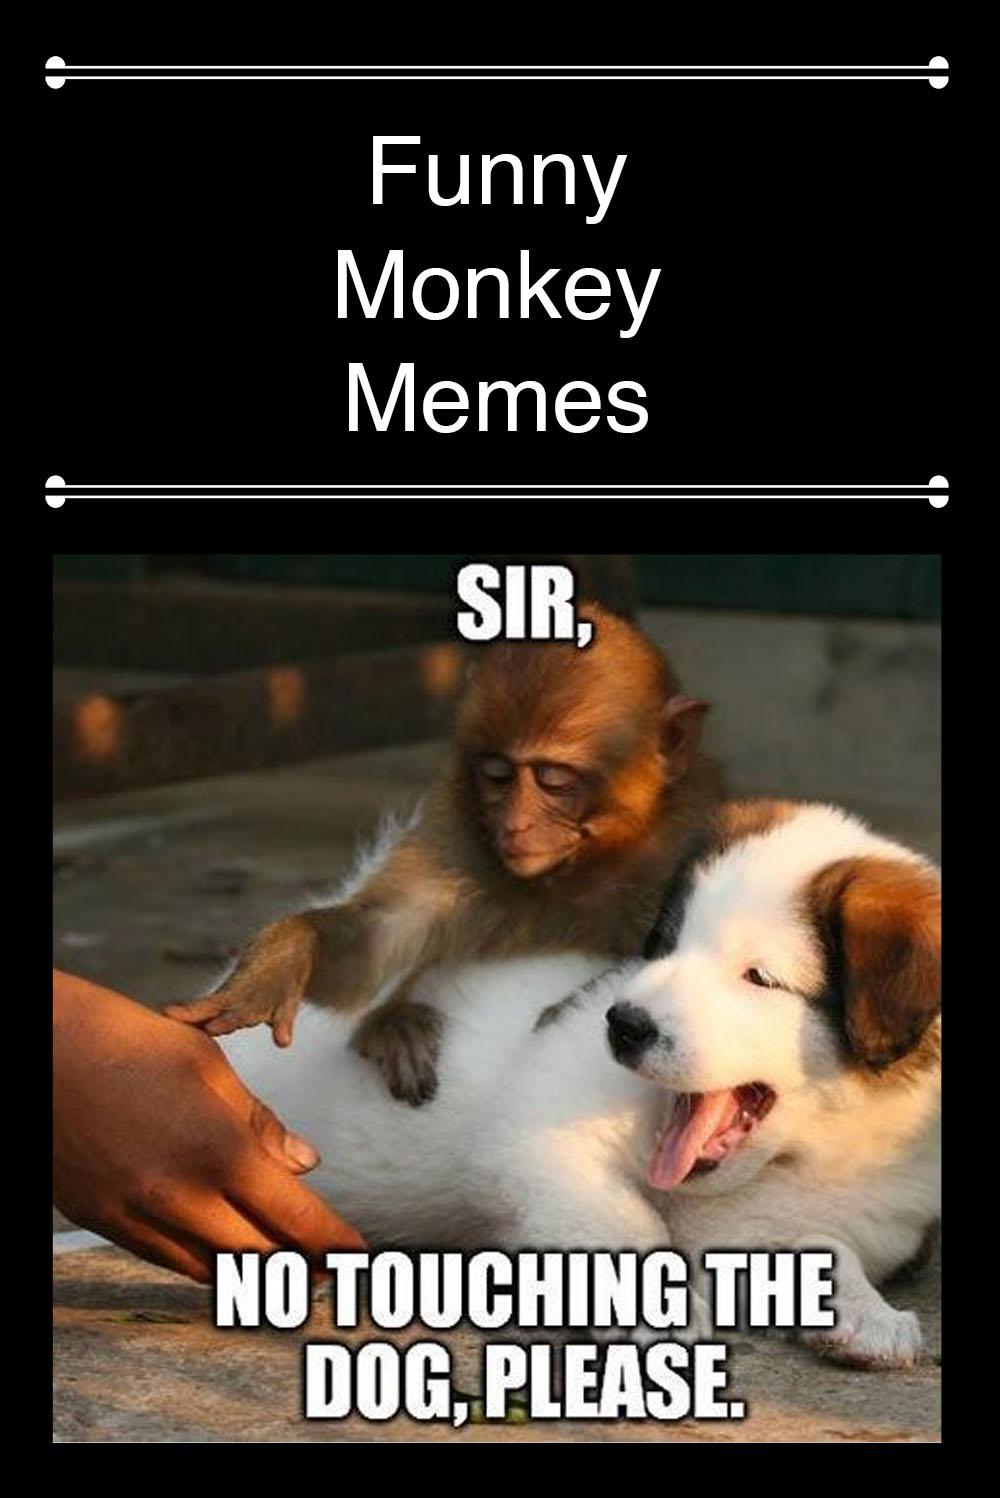 Super funny silly Monkey meme. He is Tom : r/Monkeys_Exist